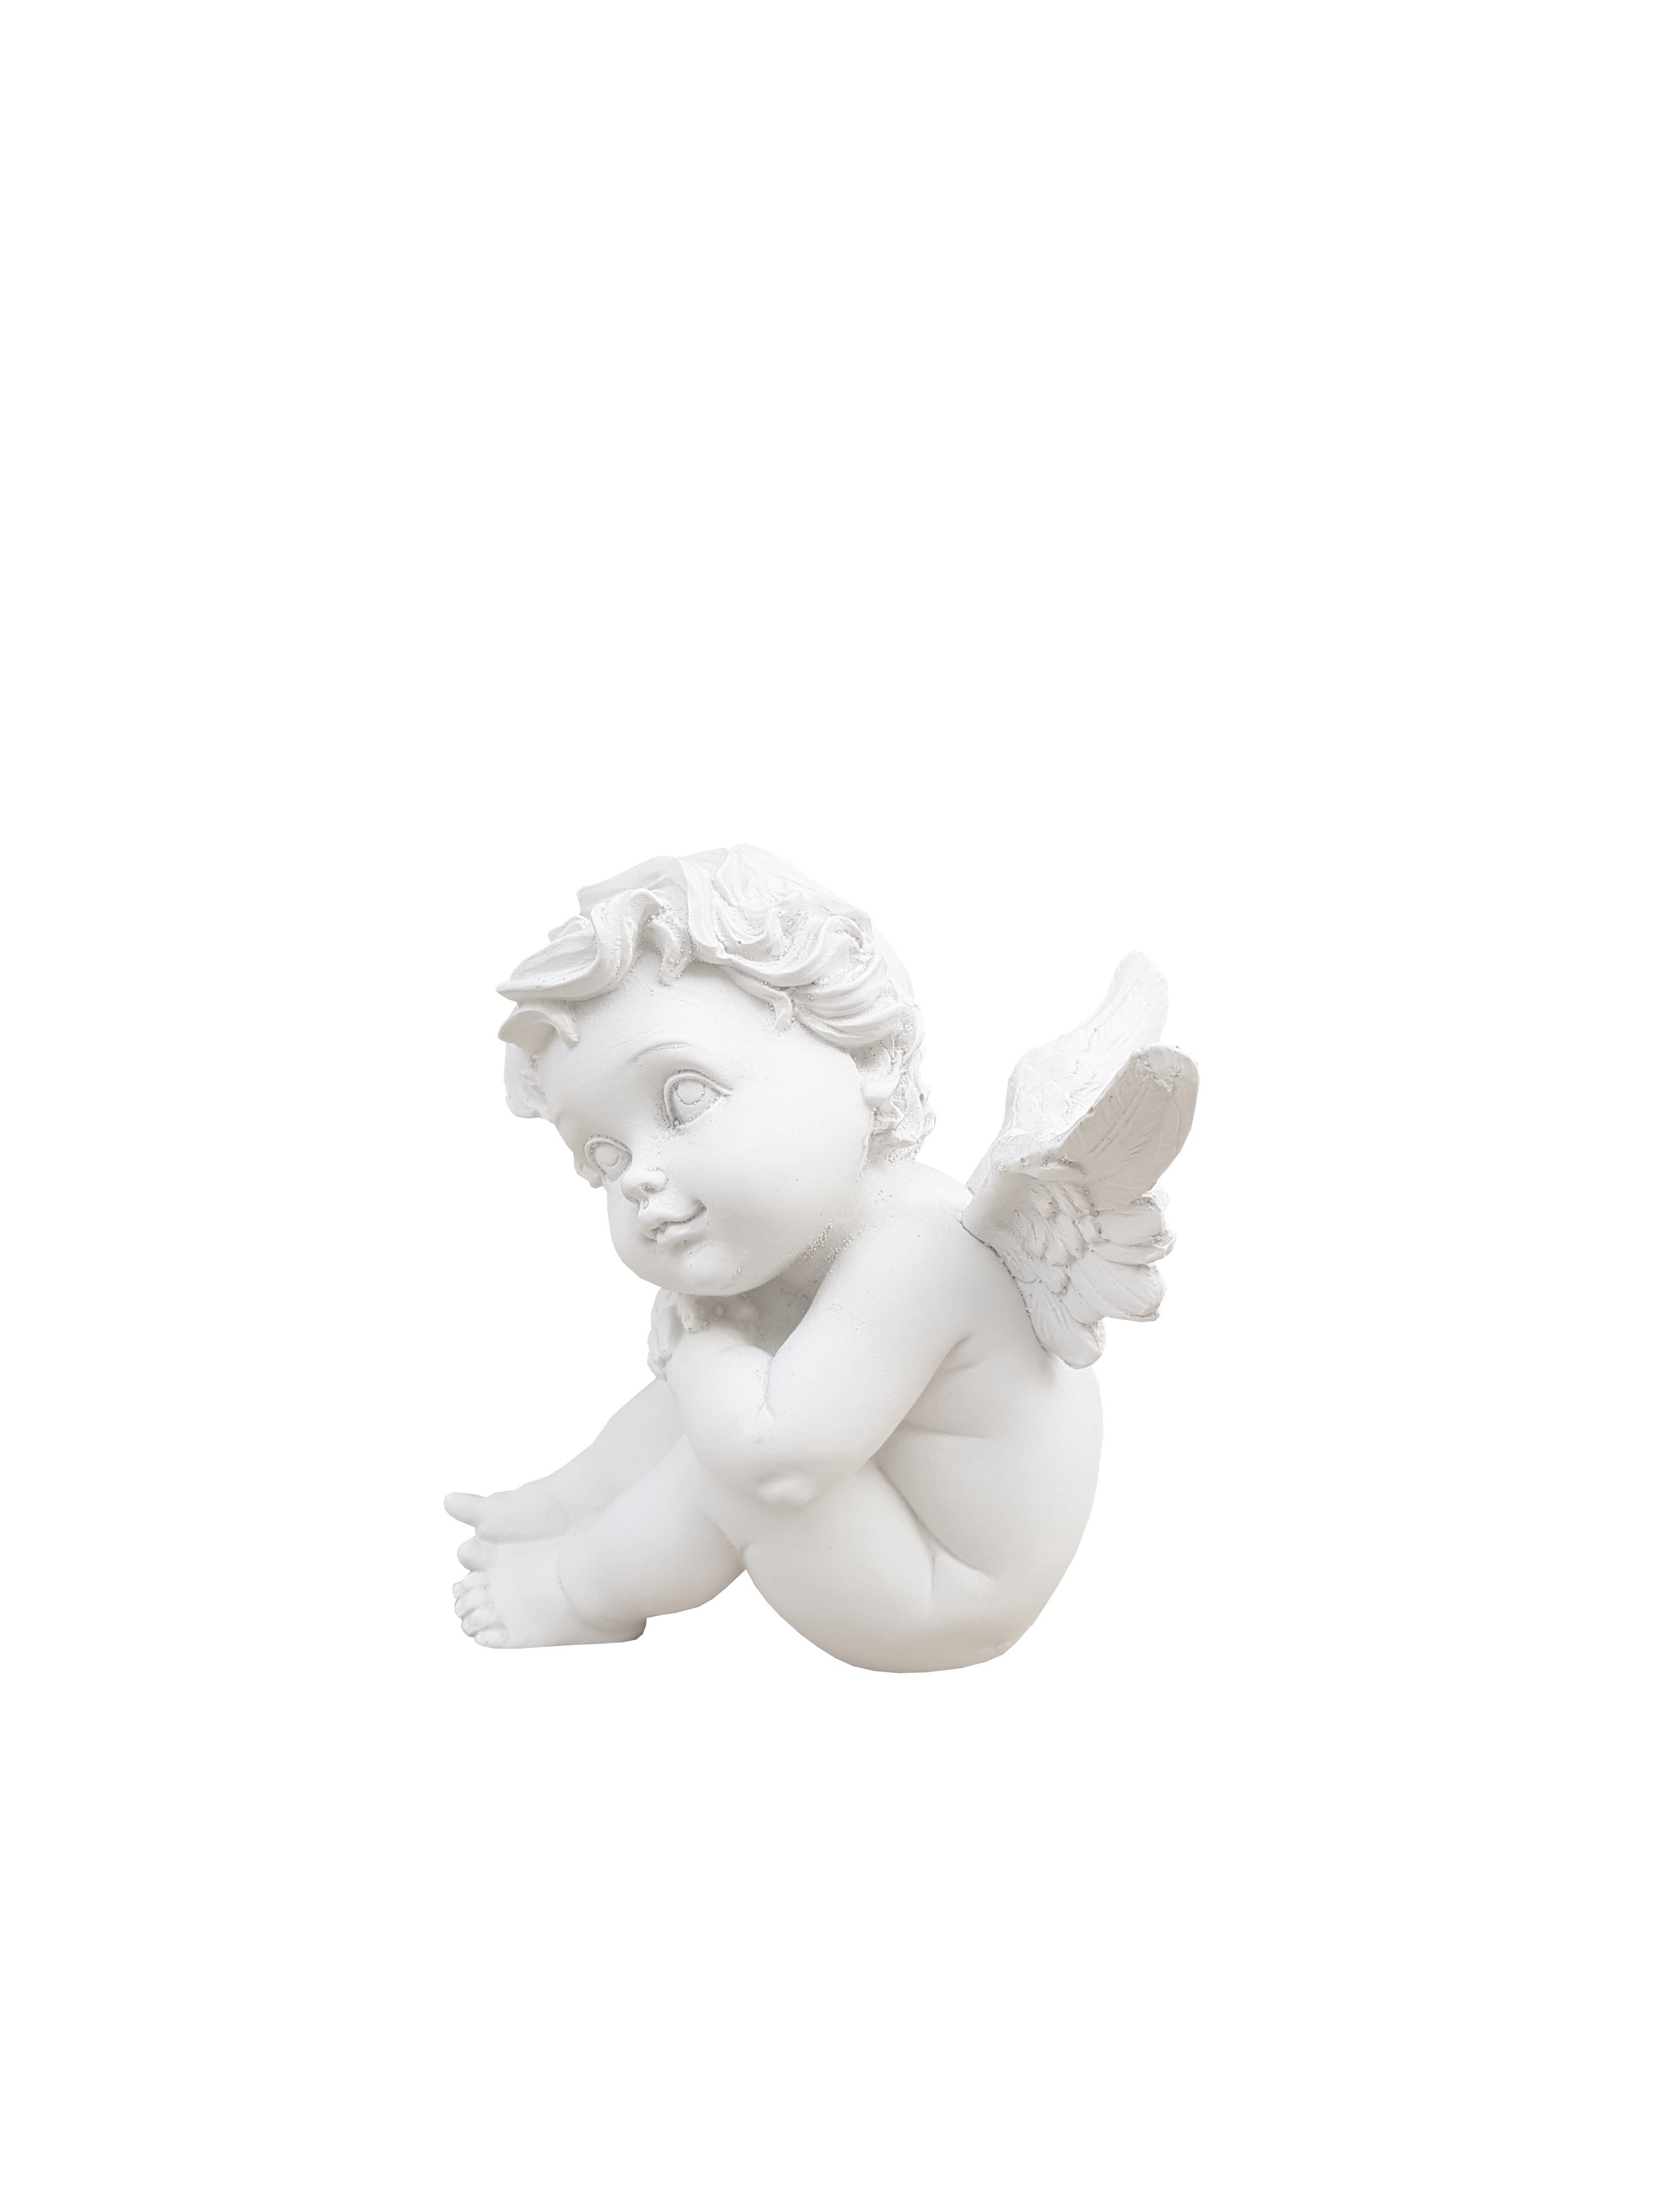 Aniołek siedzący ze skrzydełkami - Rzeźba nagrobna - 15 cm - R 01